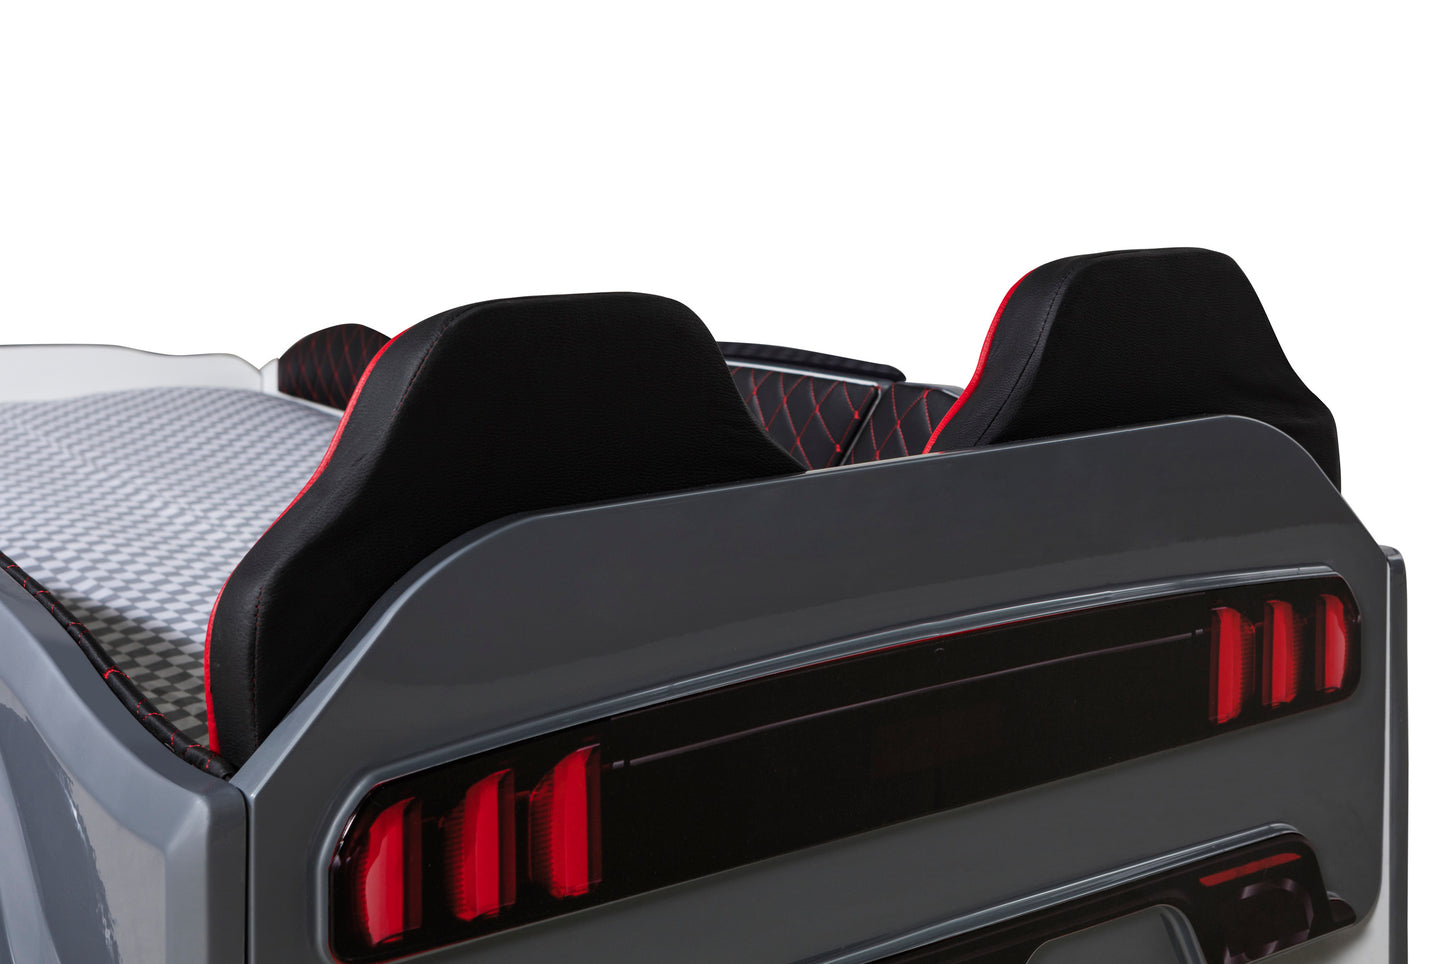 Letto singolo contenitore a forma di auto sportiva MUSTANG colore grigio, con apertura porte, materasso incluso.